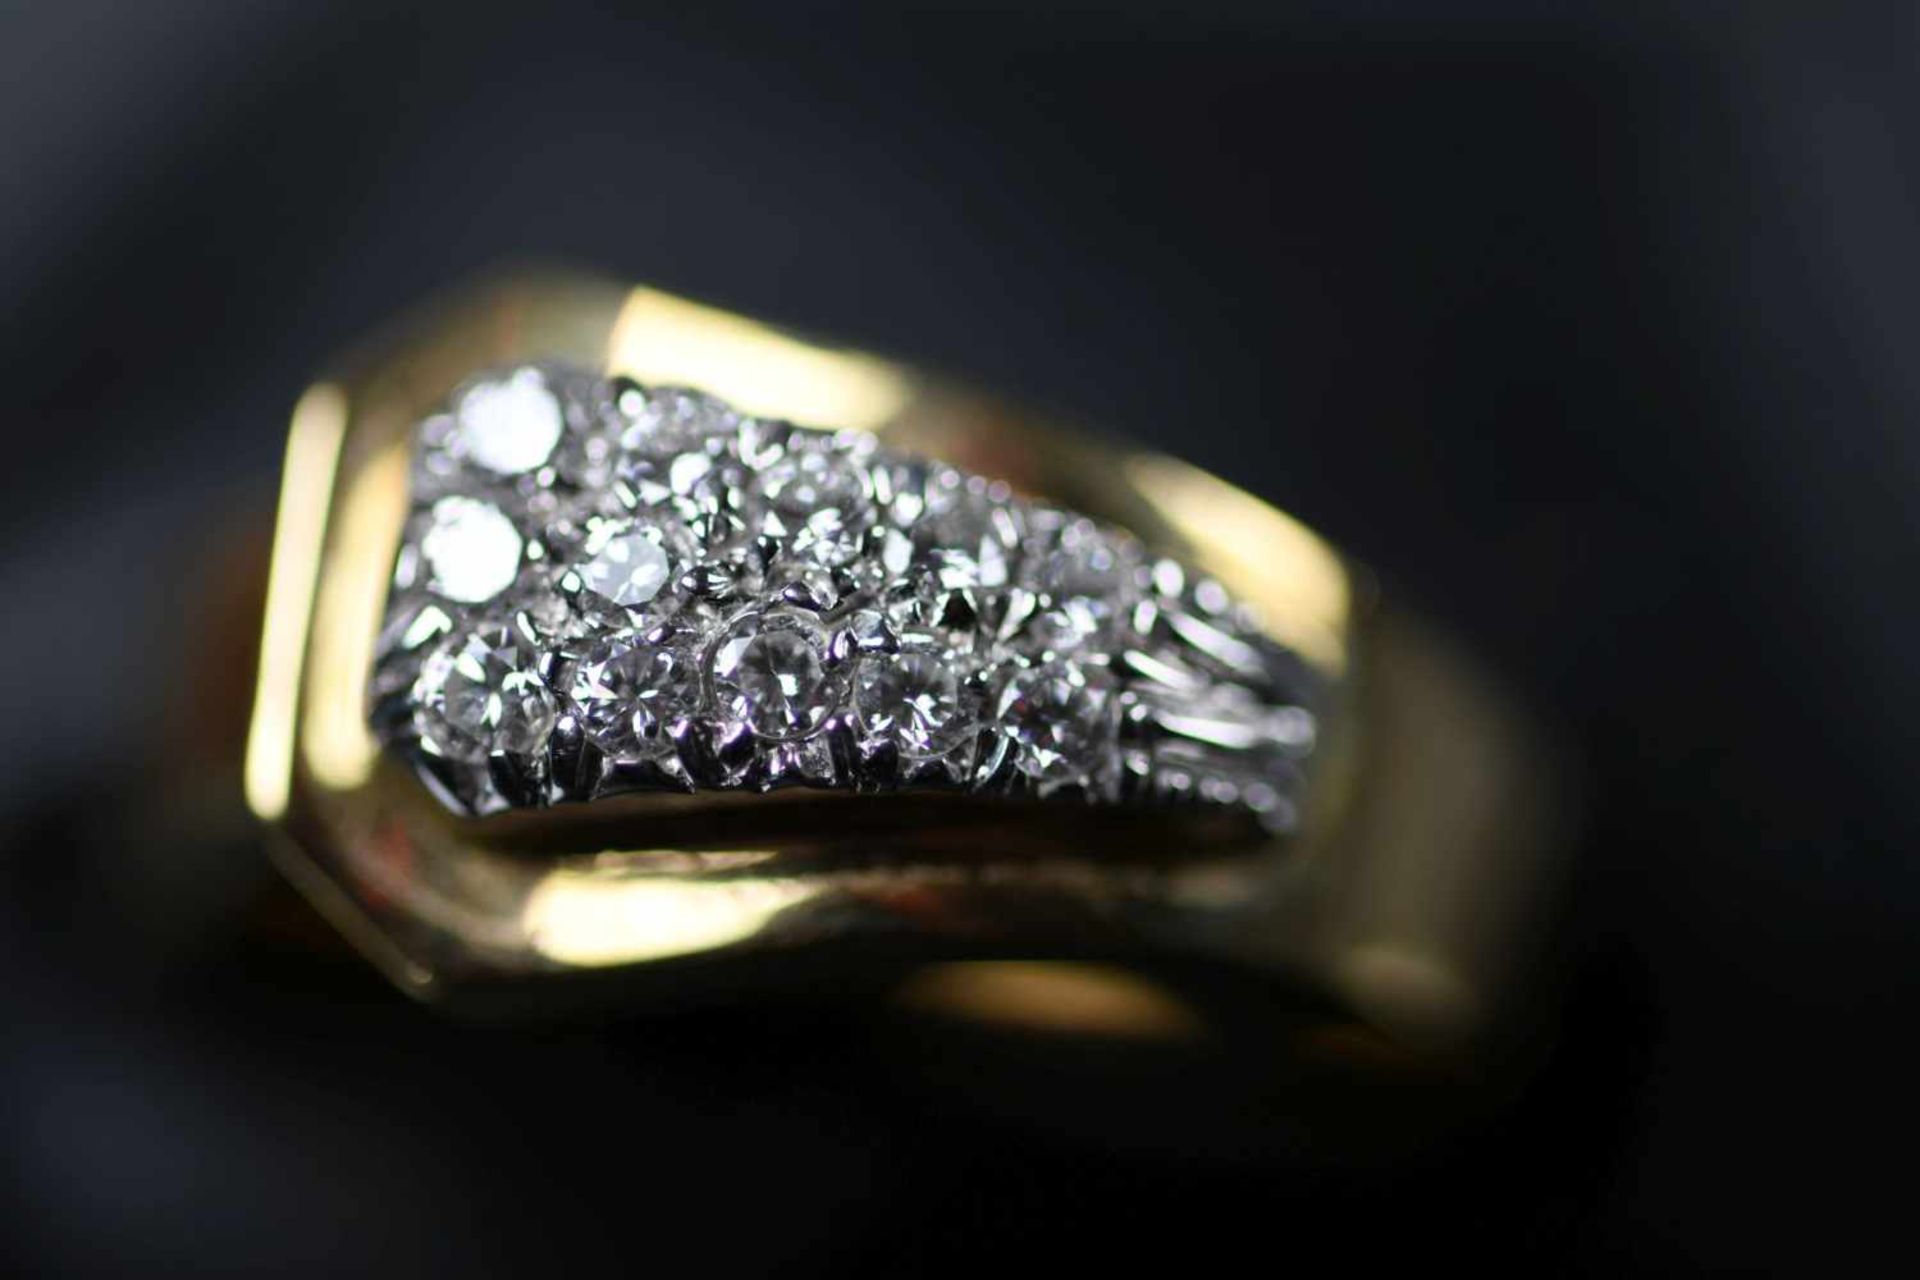 Damenring, GG 750ausgefasst mit 12 Brillanten, ca. 0,24 ct/H/si-P1, Ringgröße: 54, ca. 5,7 gr. (